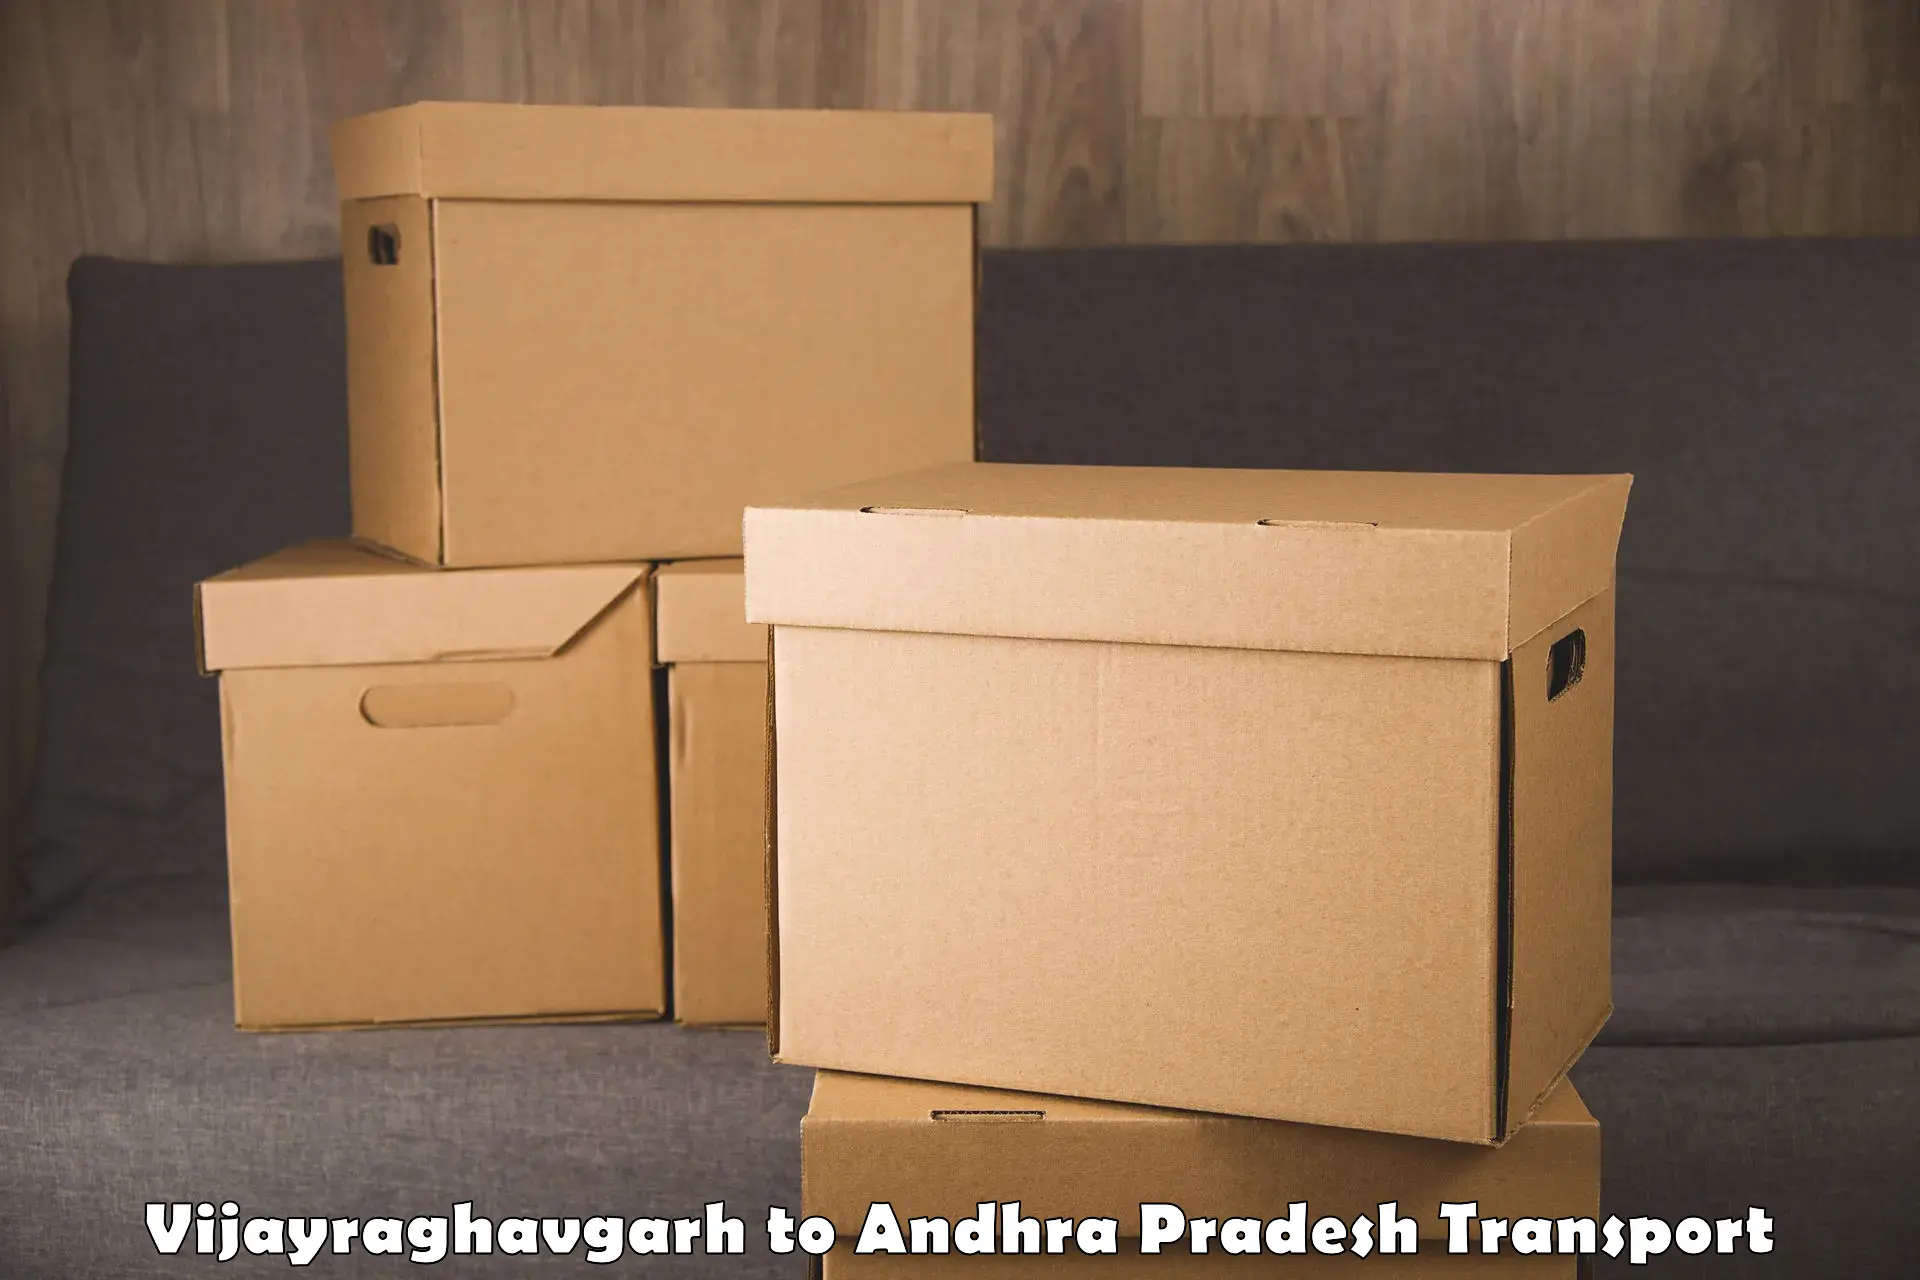 International cargo transportation services Vijayraghavgarh to Andhra Pradesh